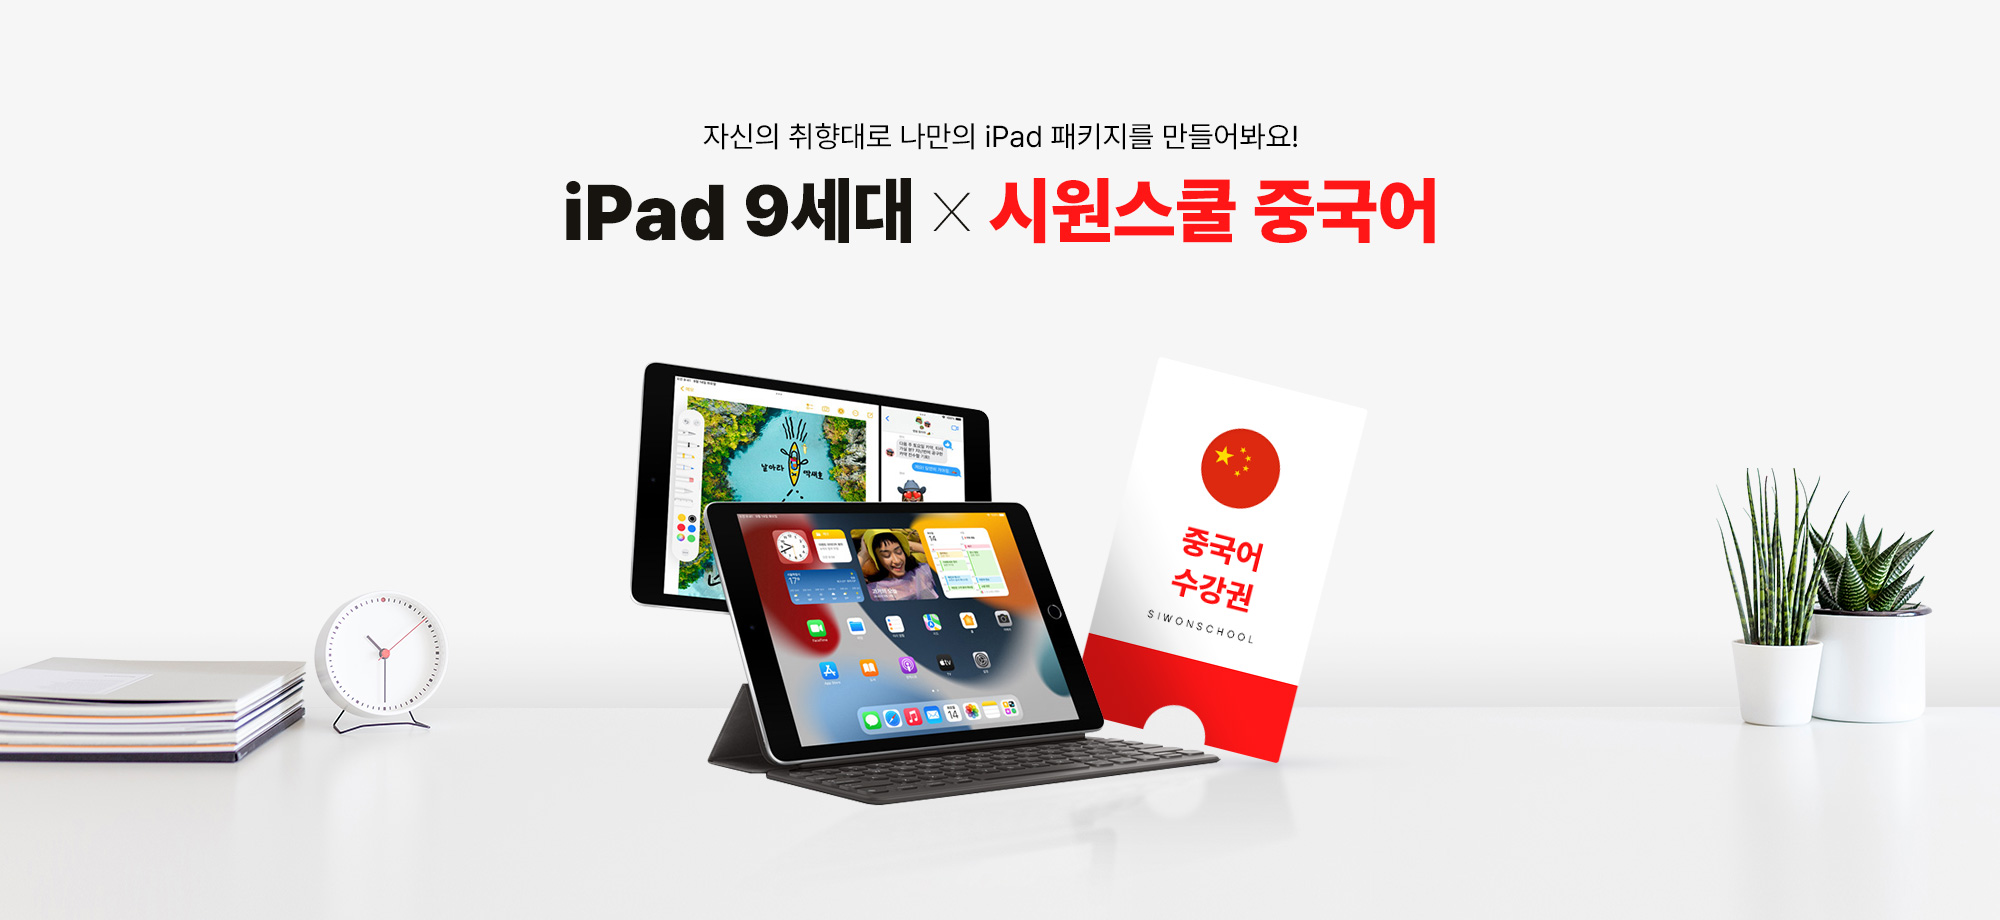 자신의 취향대로 나만의 iPad 패키지를 만들어봐요! iPad9세대 X 시원스쿨 중국어